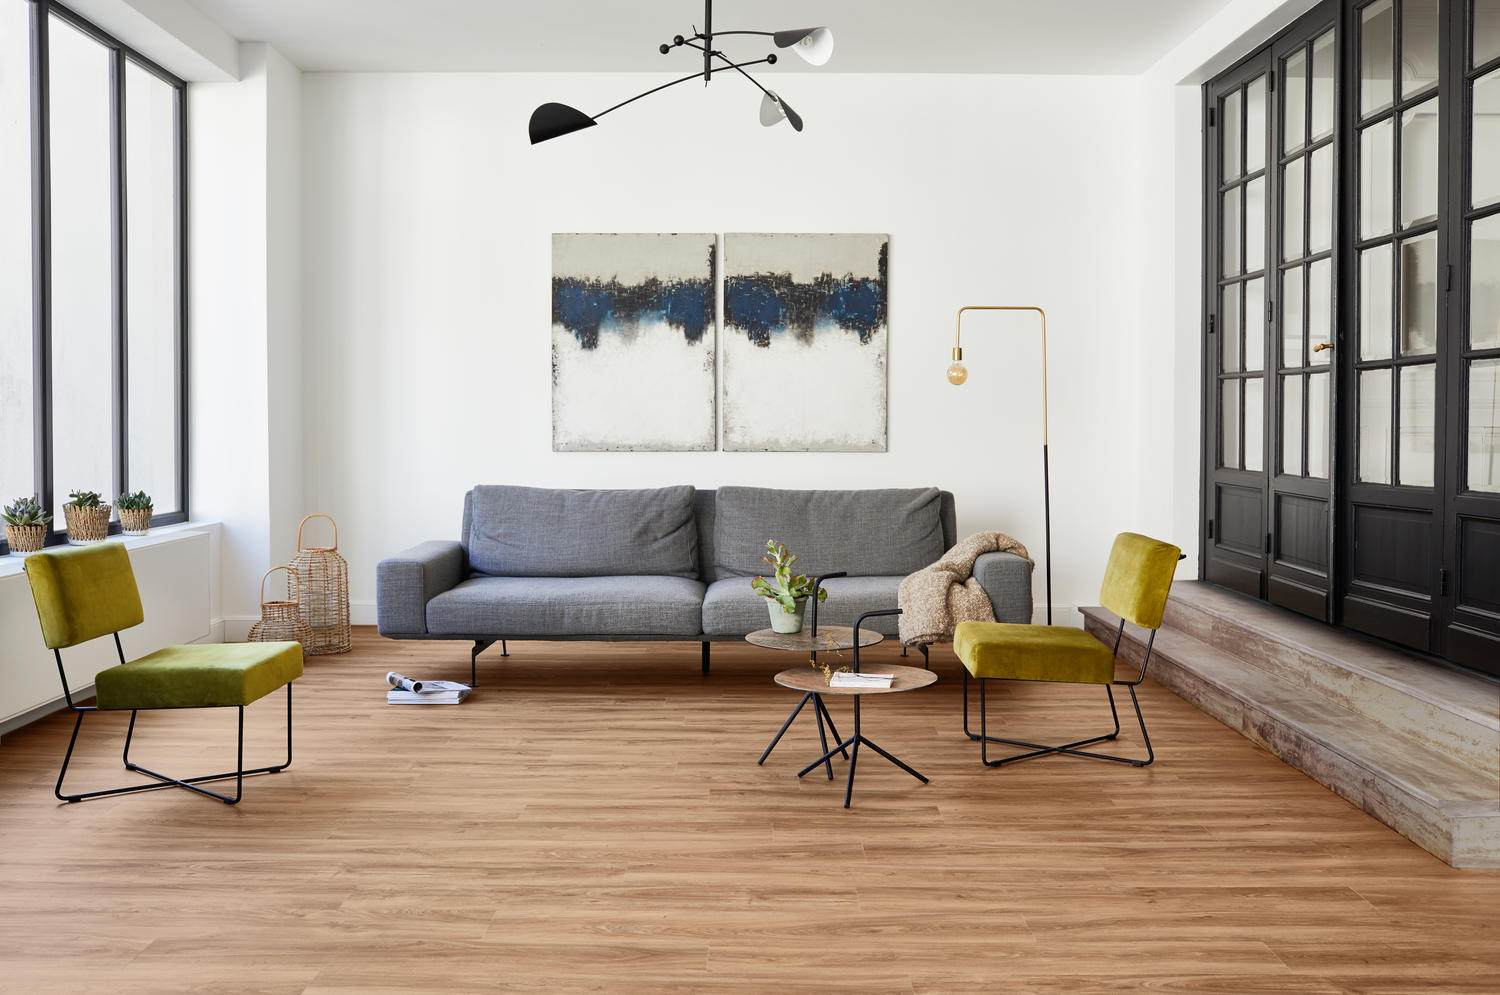 Phong cách minimalism trong nội thất ưa chuộng các màu đơn sắc 